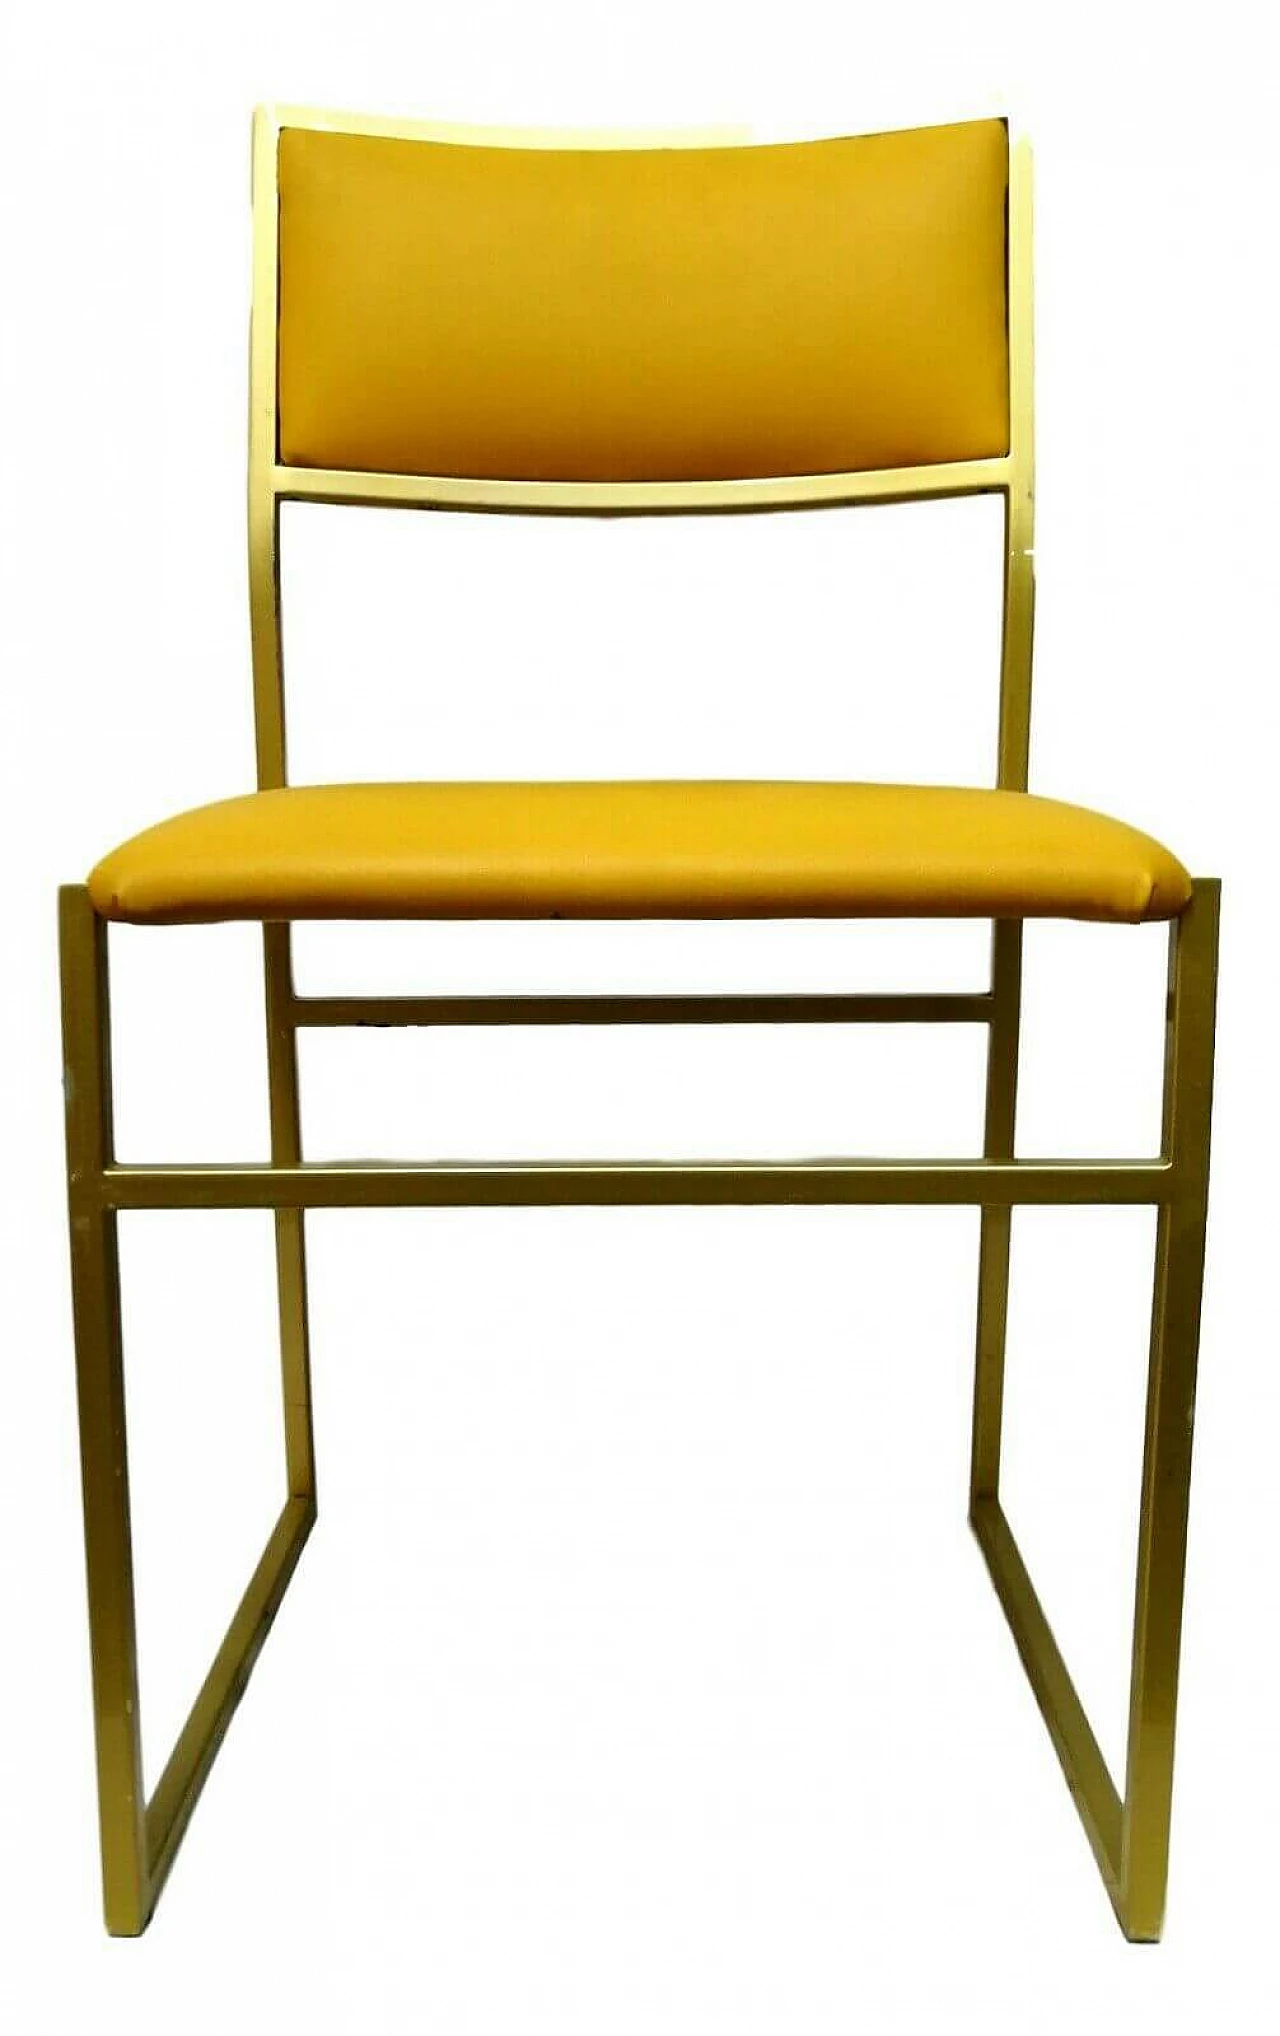 Sedia in metallo e seduta color giallo, anni '70 1166239